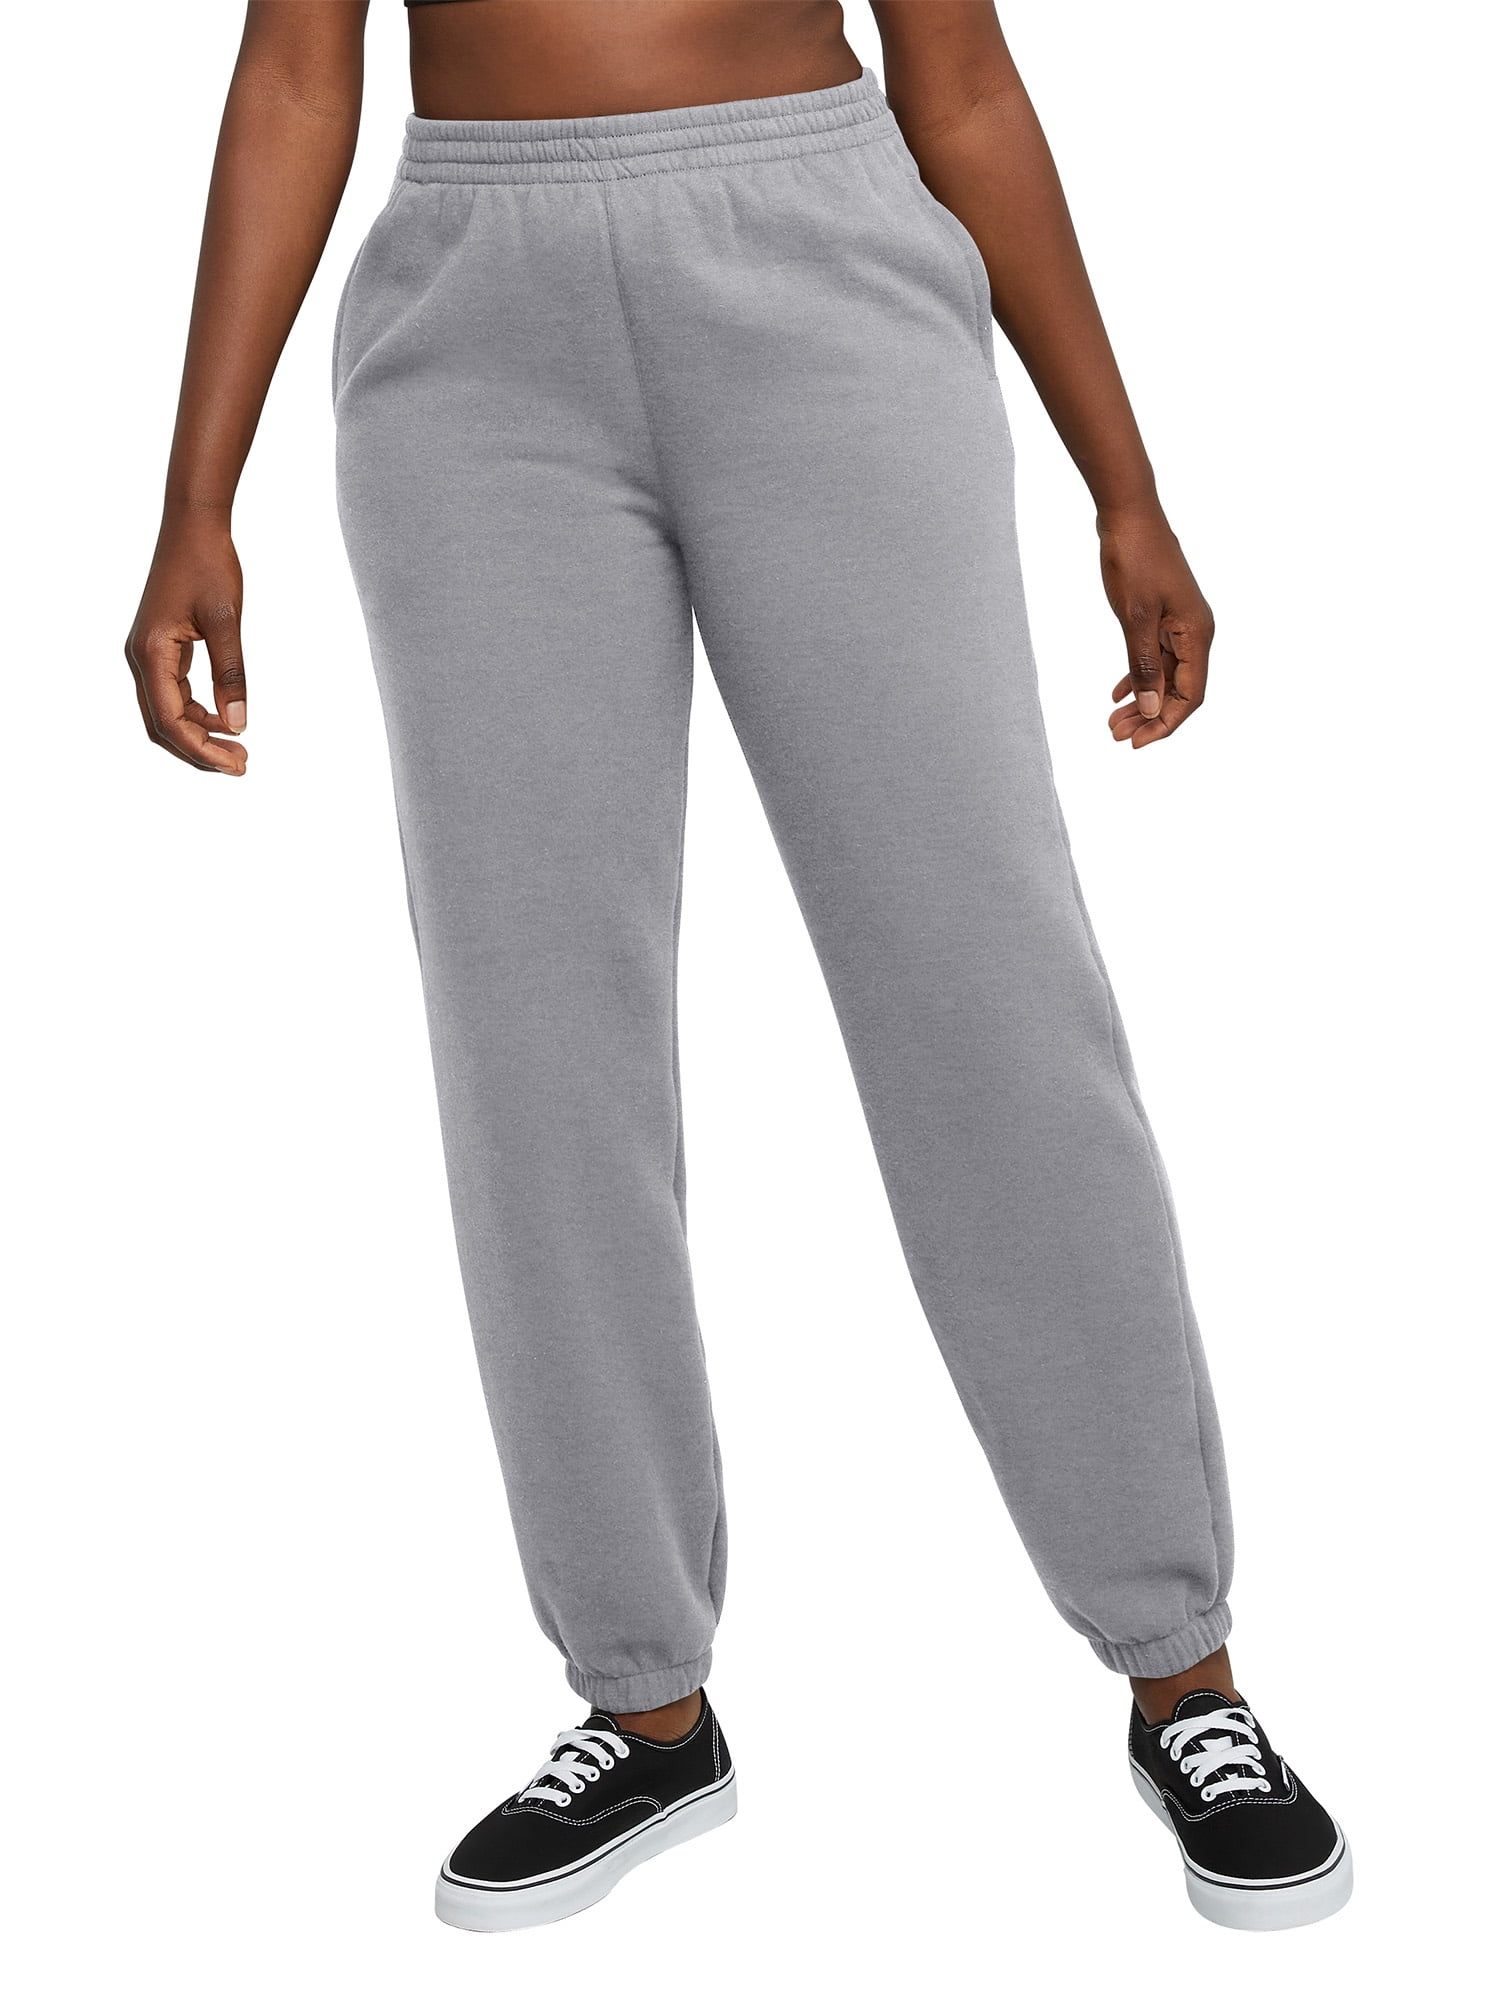 Hanes Originals Women's Jogger Sweatpants With Pockets - Walmart.com